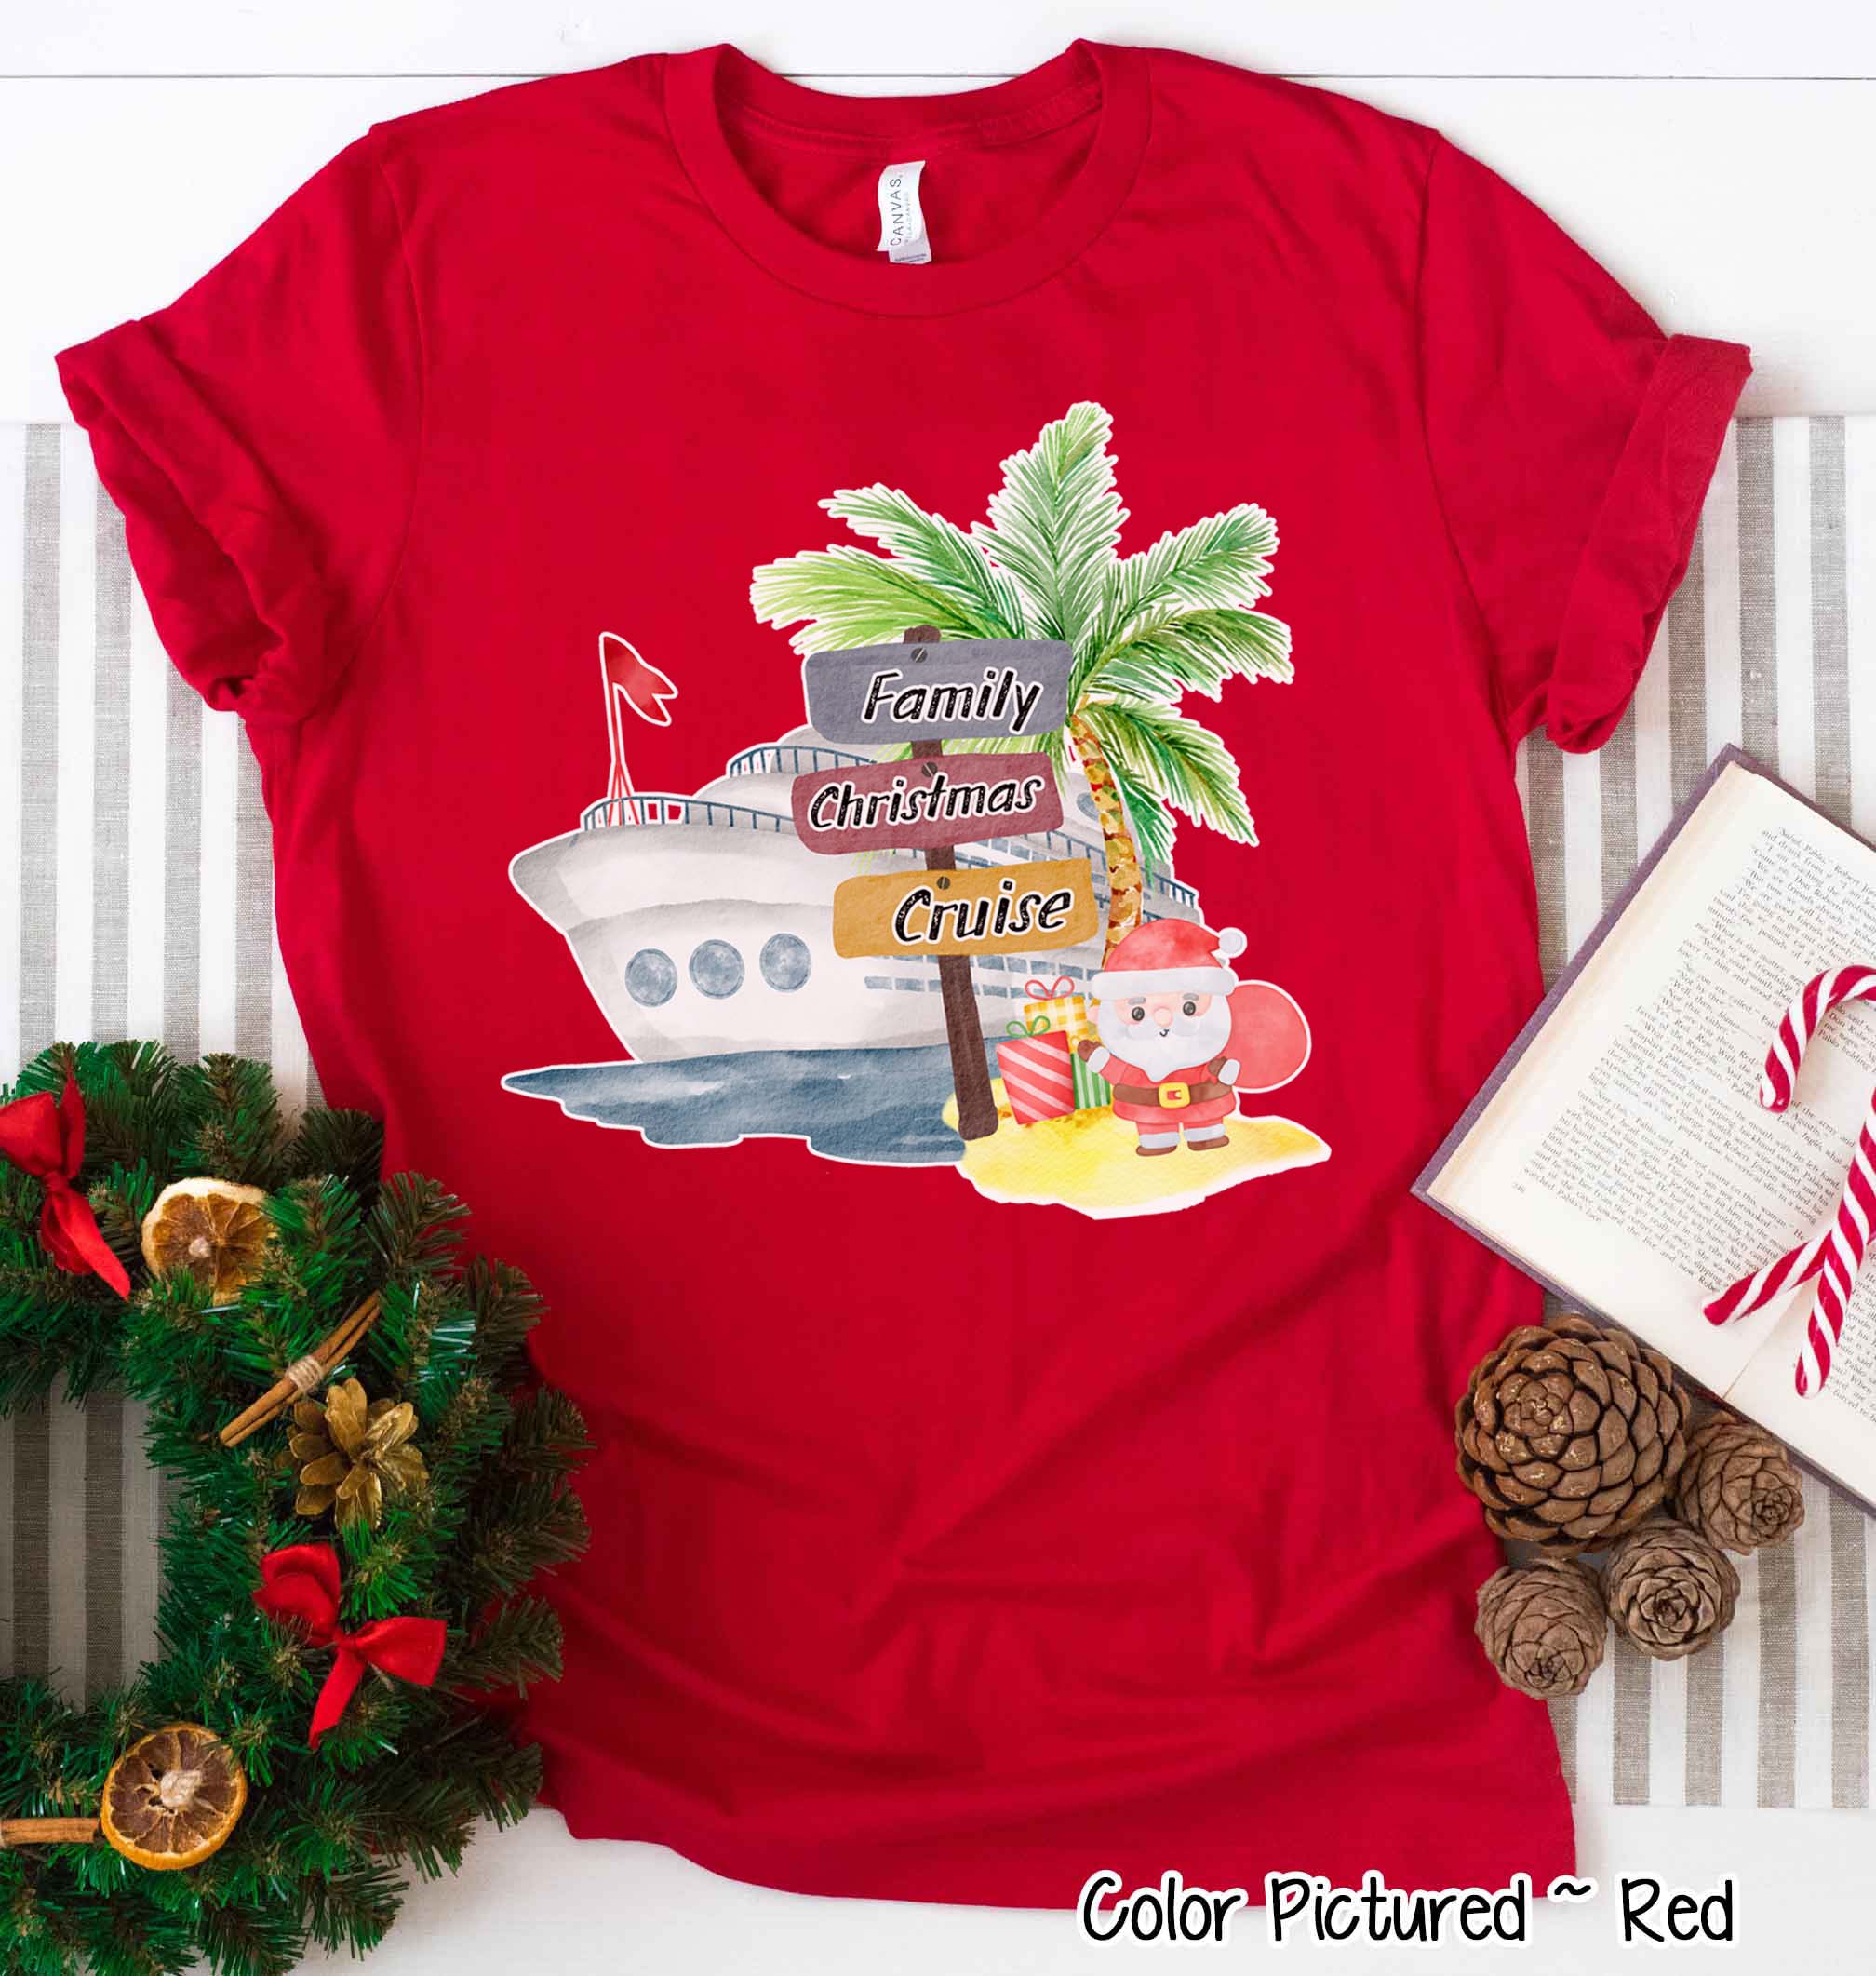 Family Christmas Cruise Tee or Sweatshirt